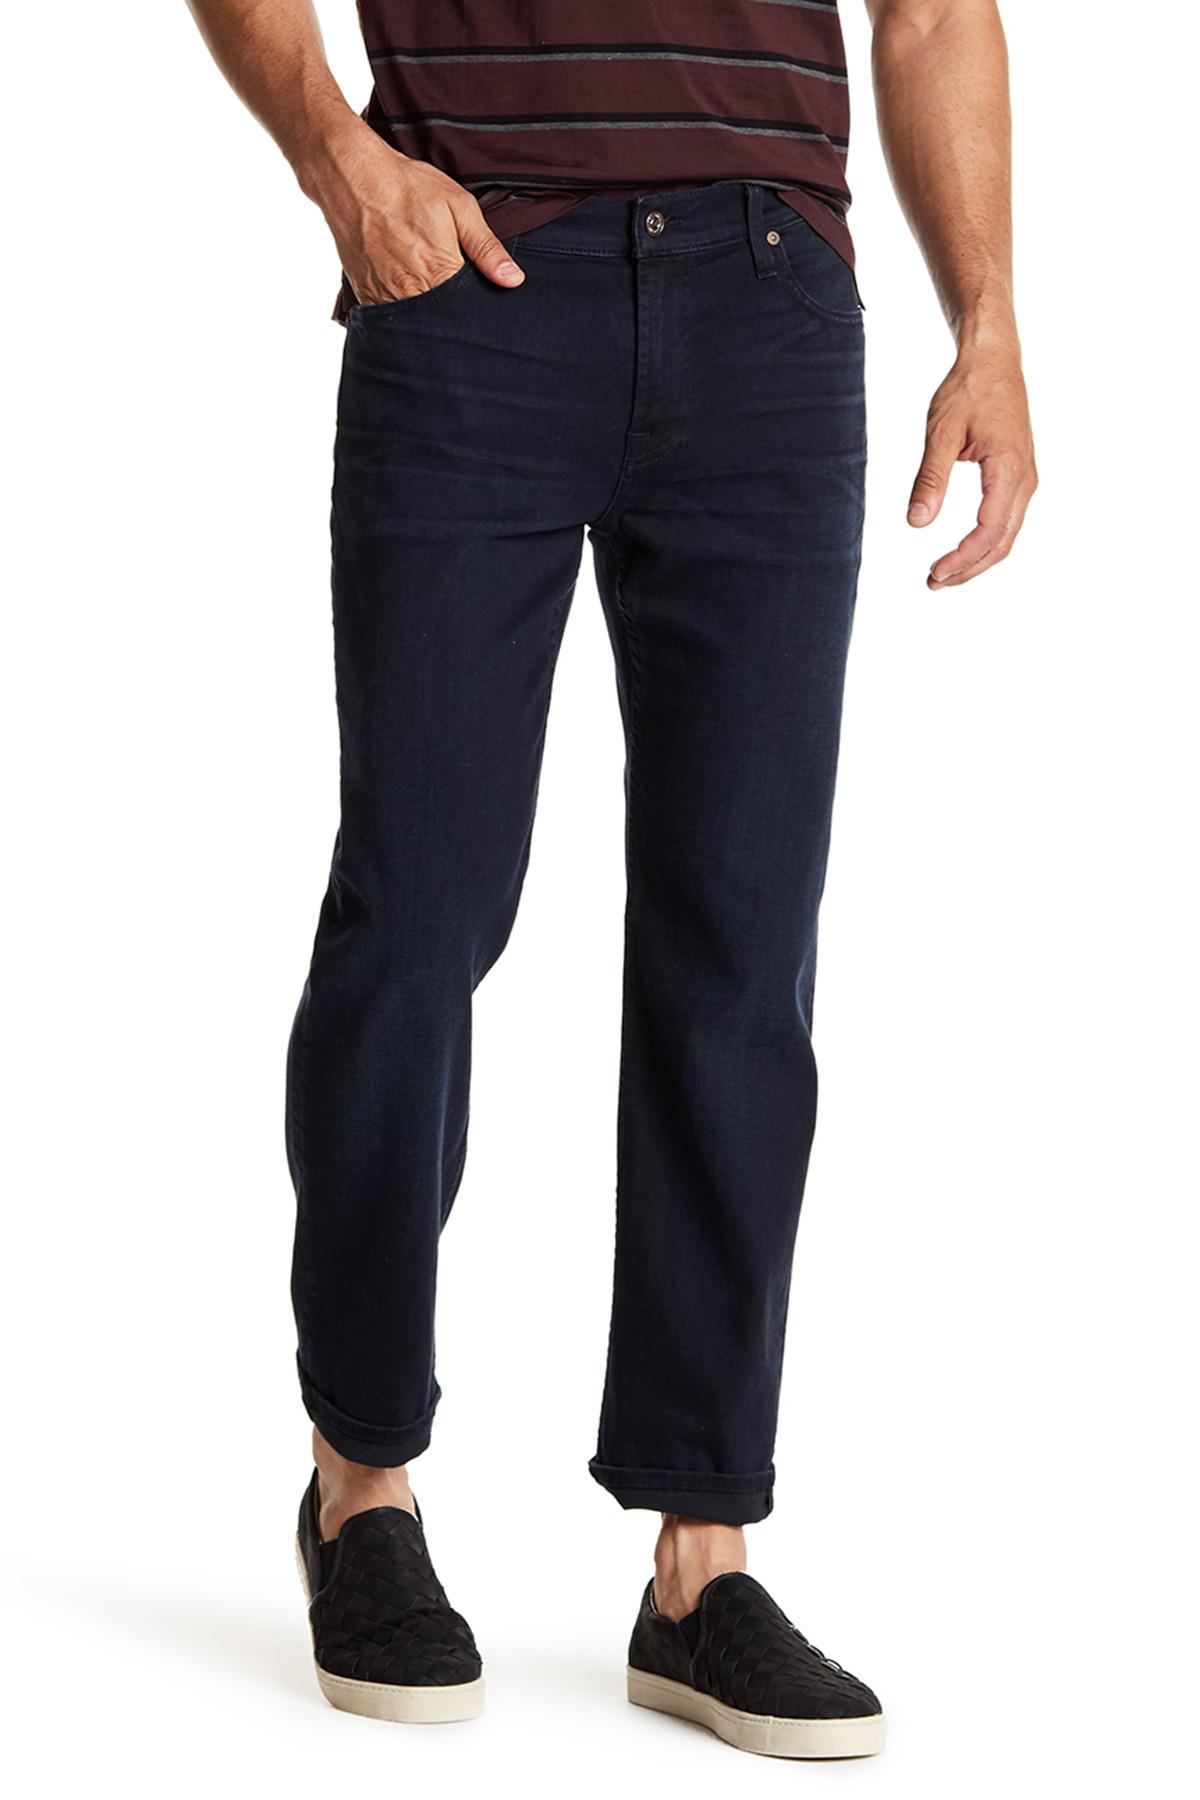 7 For All Mankind Denim Standard Straight Leg Jeans in Blue for Men - Lyst